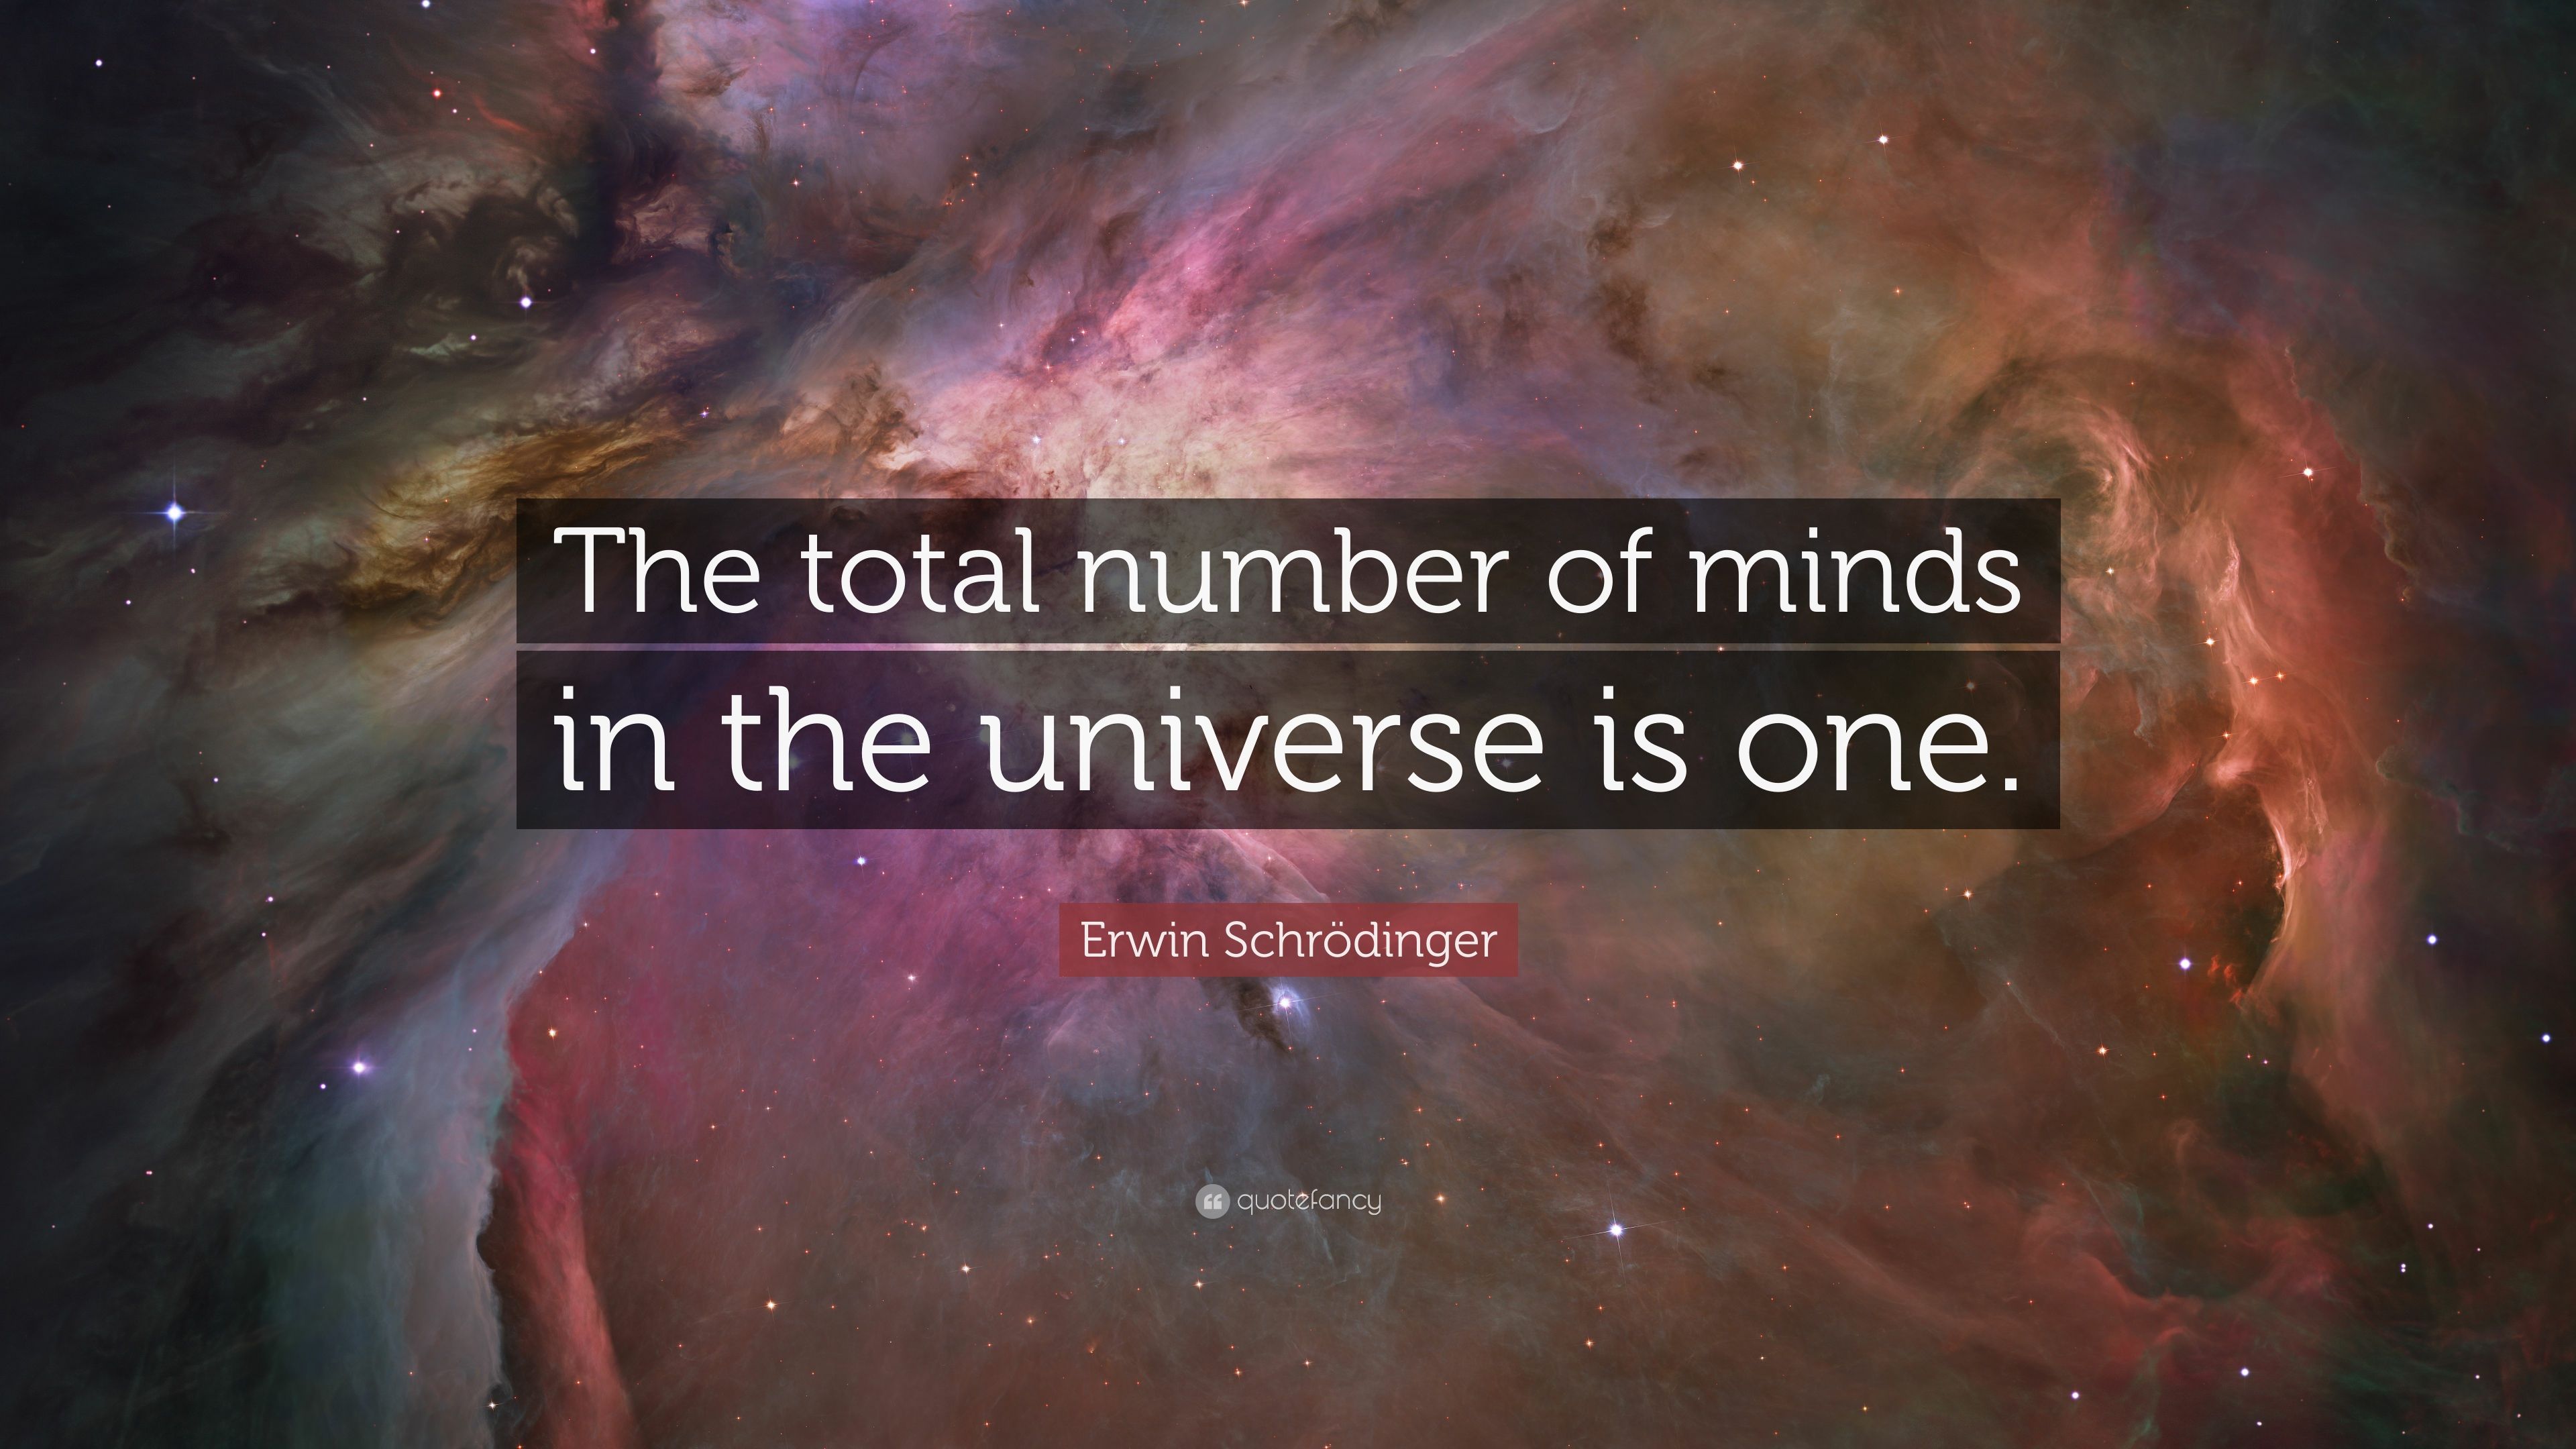 Erwin Schrödinger Quotes .quotefancy.com